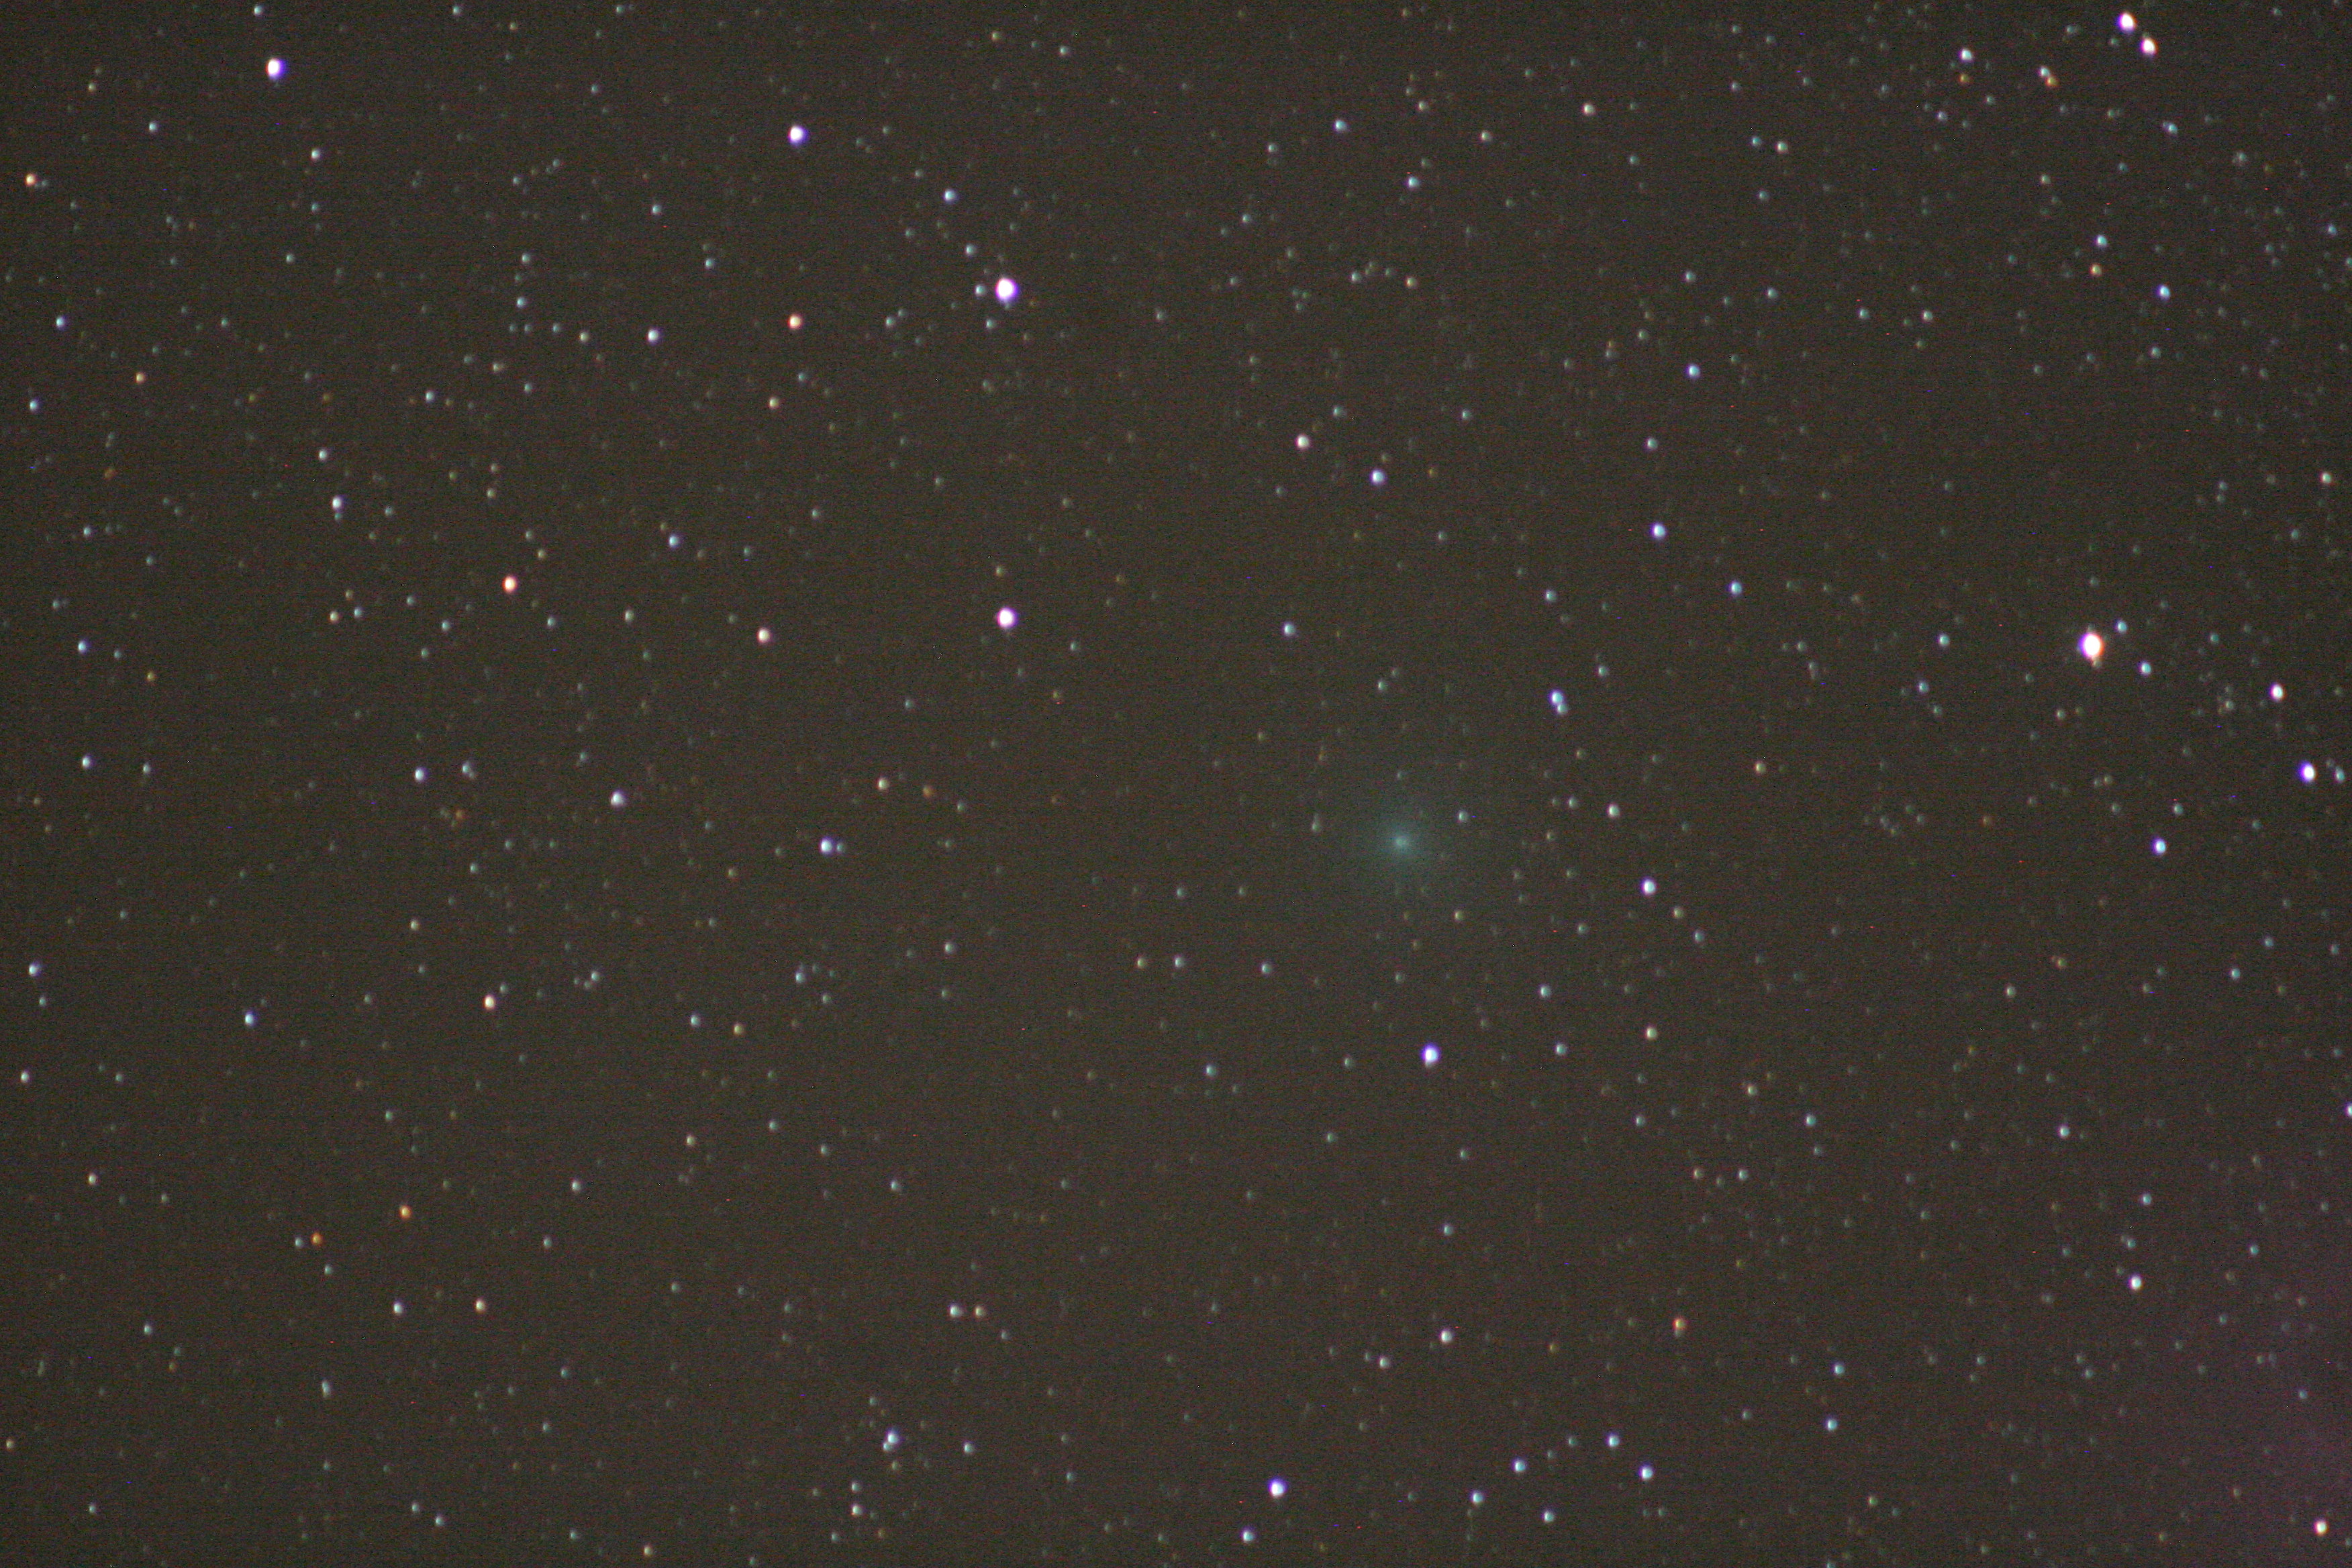 Comet Hartley